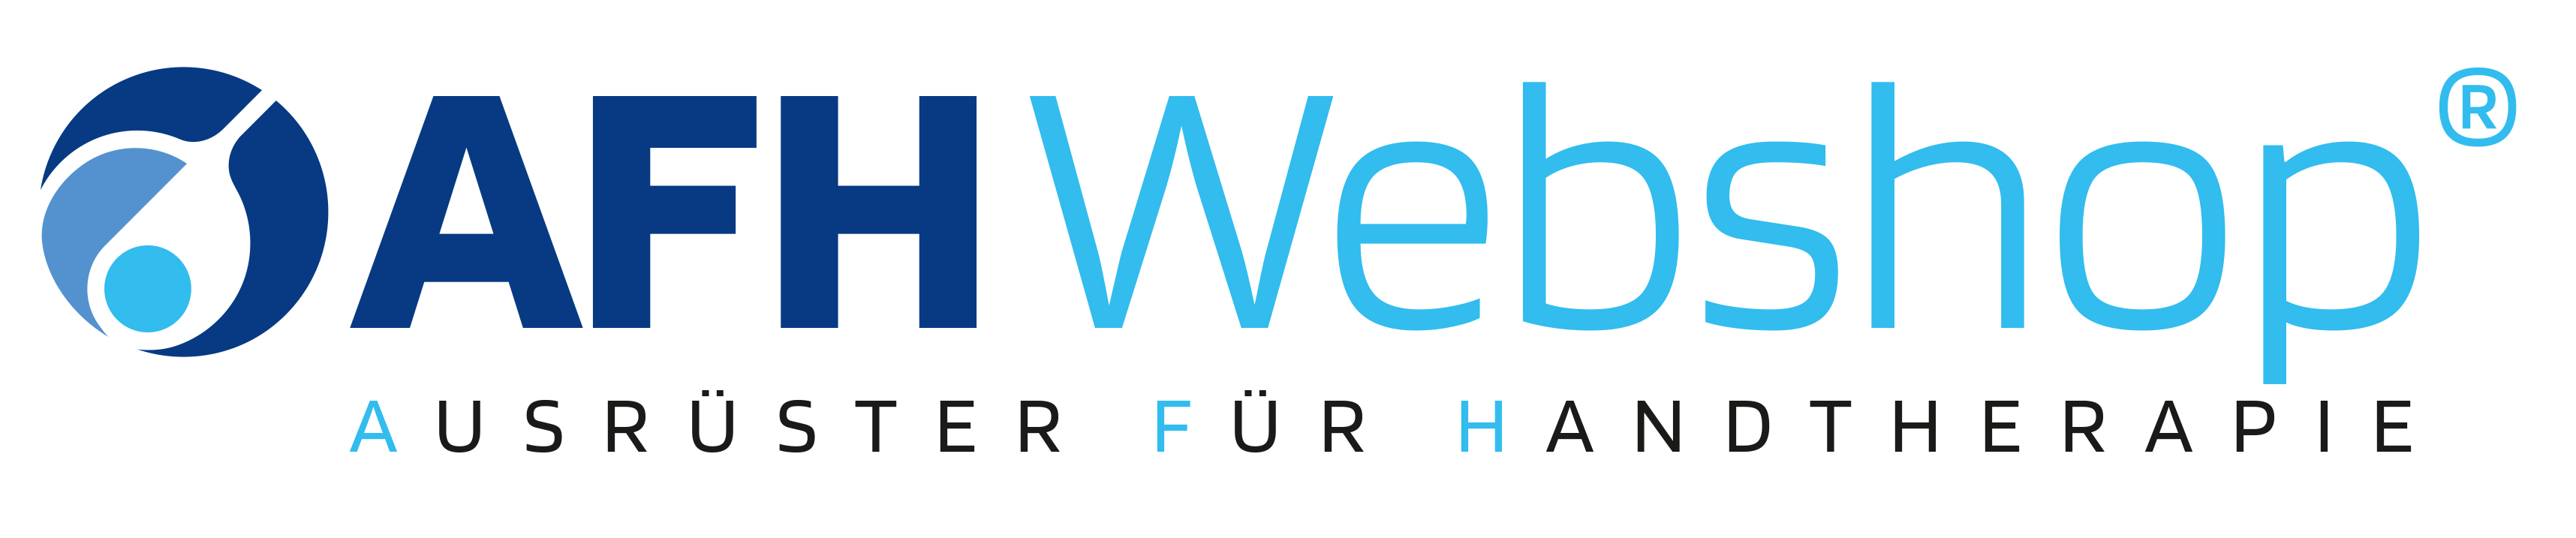 AFH-Webshop logo